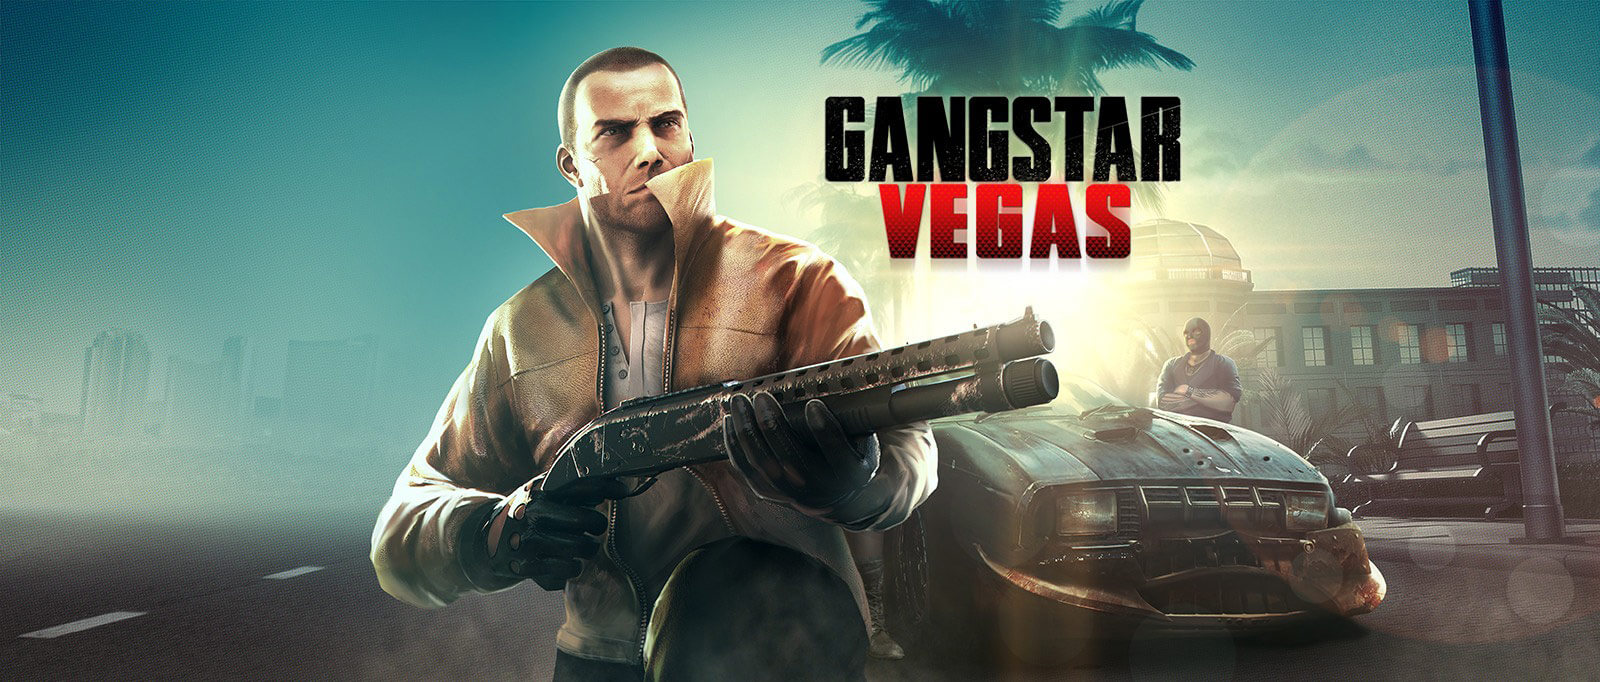 Game gangstar vegas và những tính năng của game hành động đẳng cấp